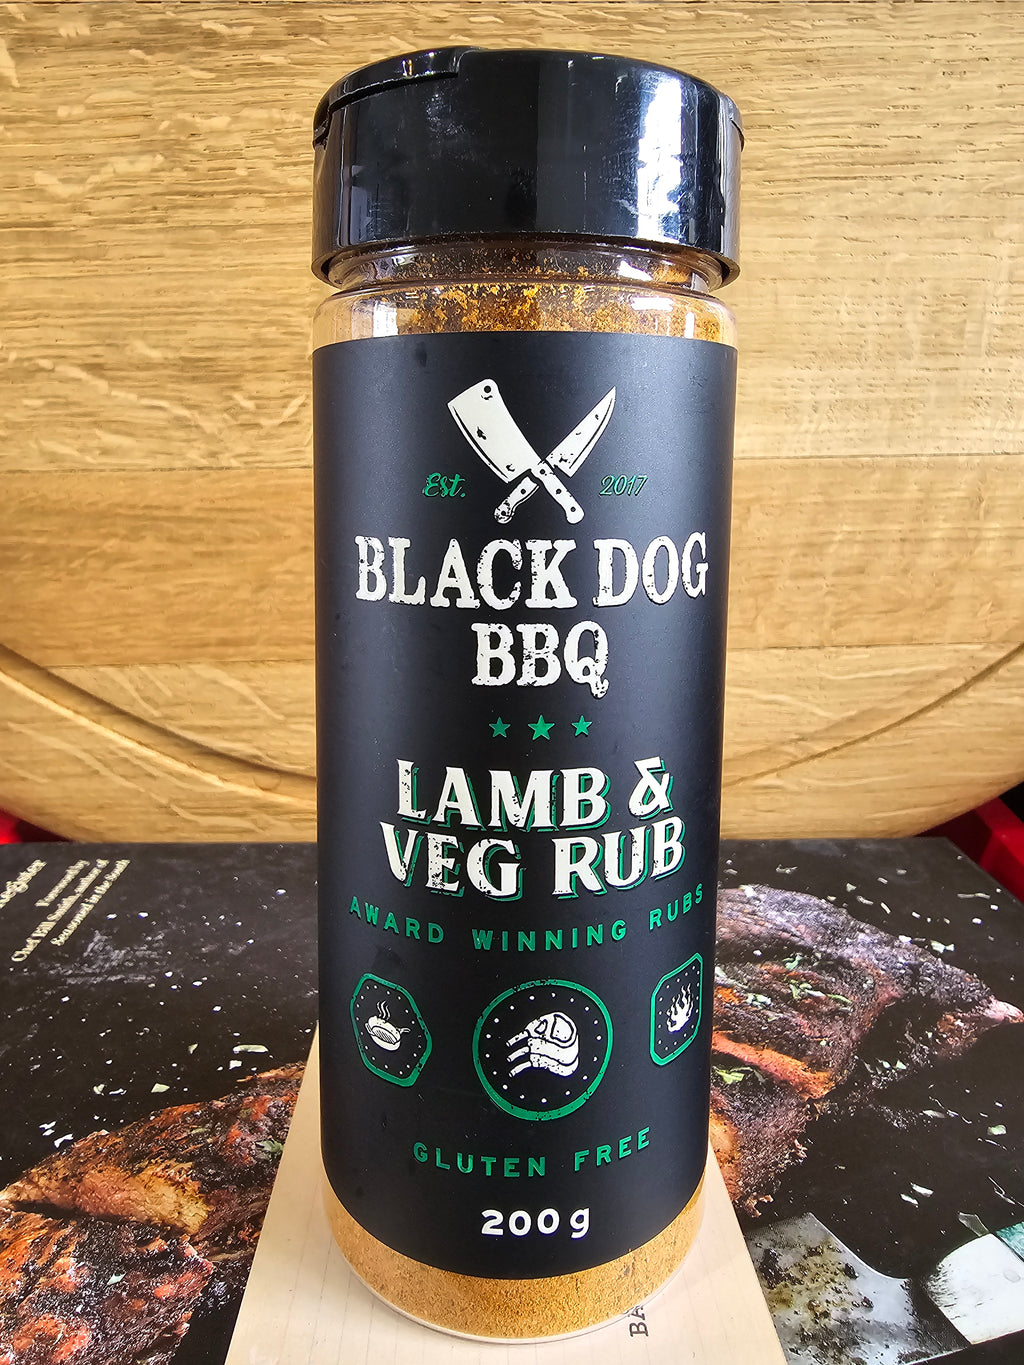 Lamb & Veg Rub By Black Dog BBQ